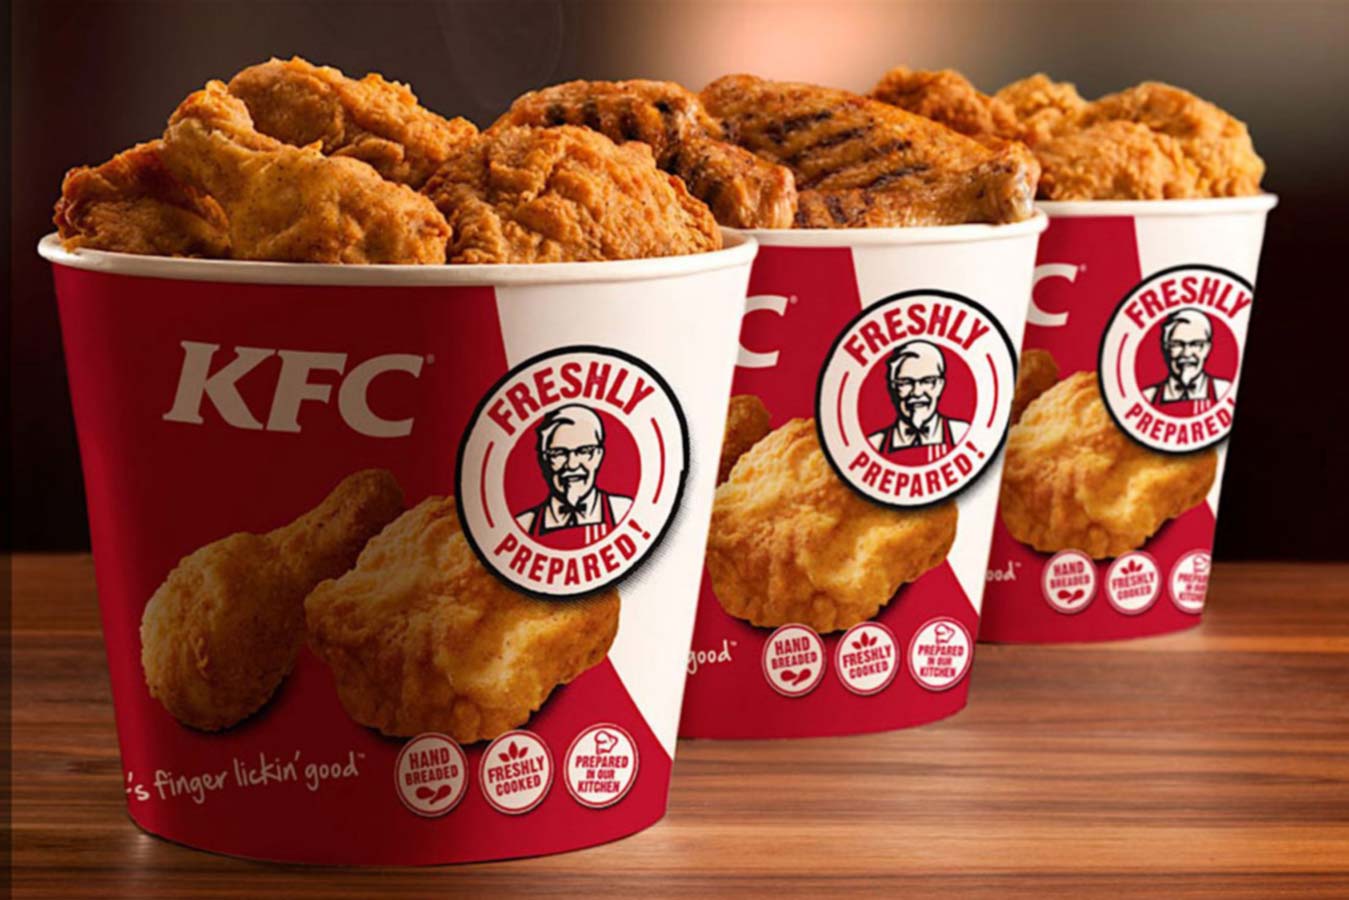 Nakon 64 godine KFC ukinuo slogan